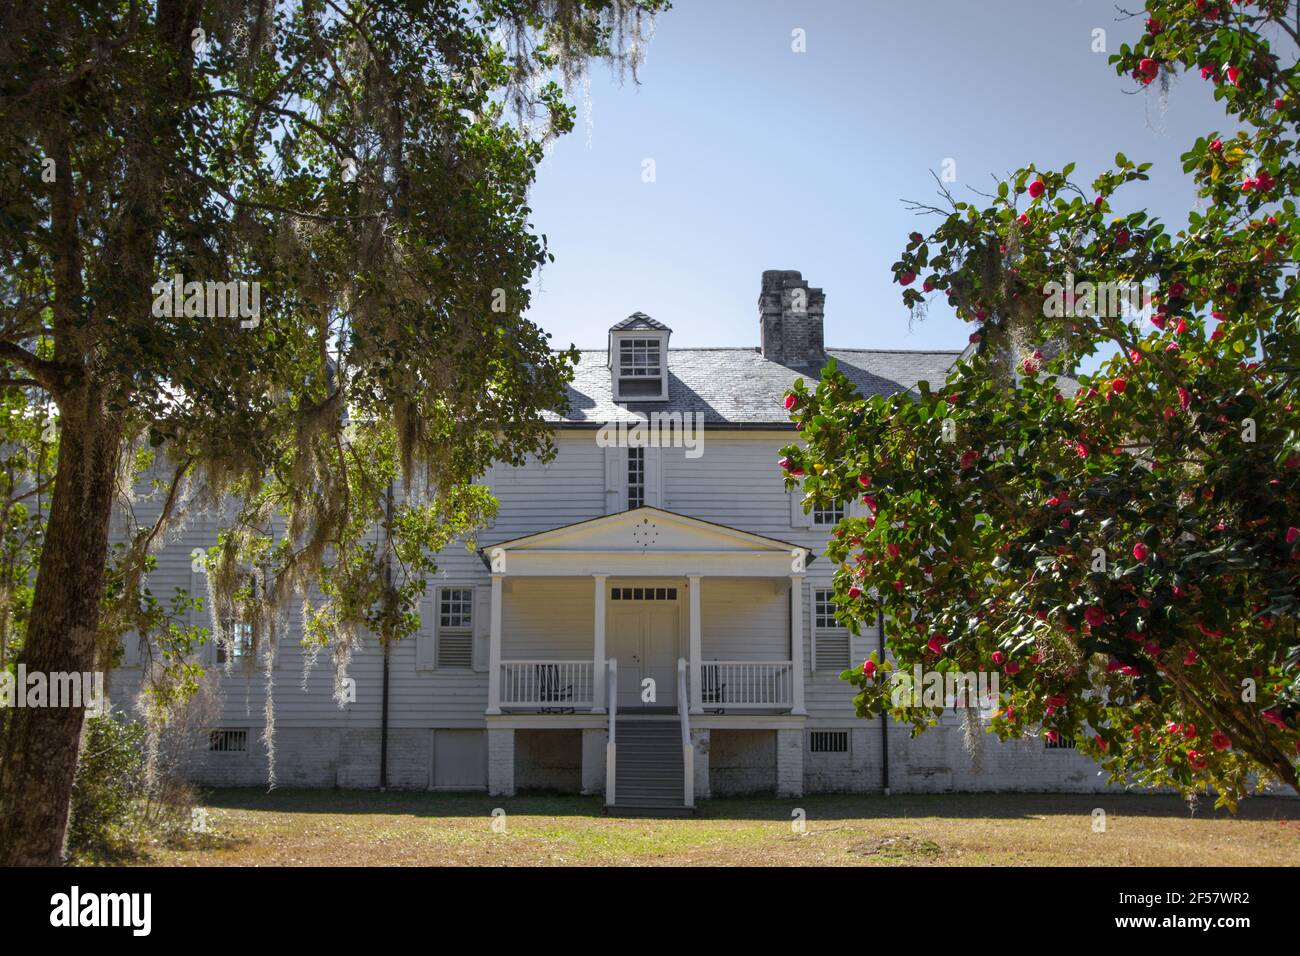 Extérieur de la plantation historique de Hampton. Le manoir de style avant-guerre, apparemment hanté, est la pièce maîtresse d'un parc d'État de Caroline du Sud. Banque D'Images